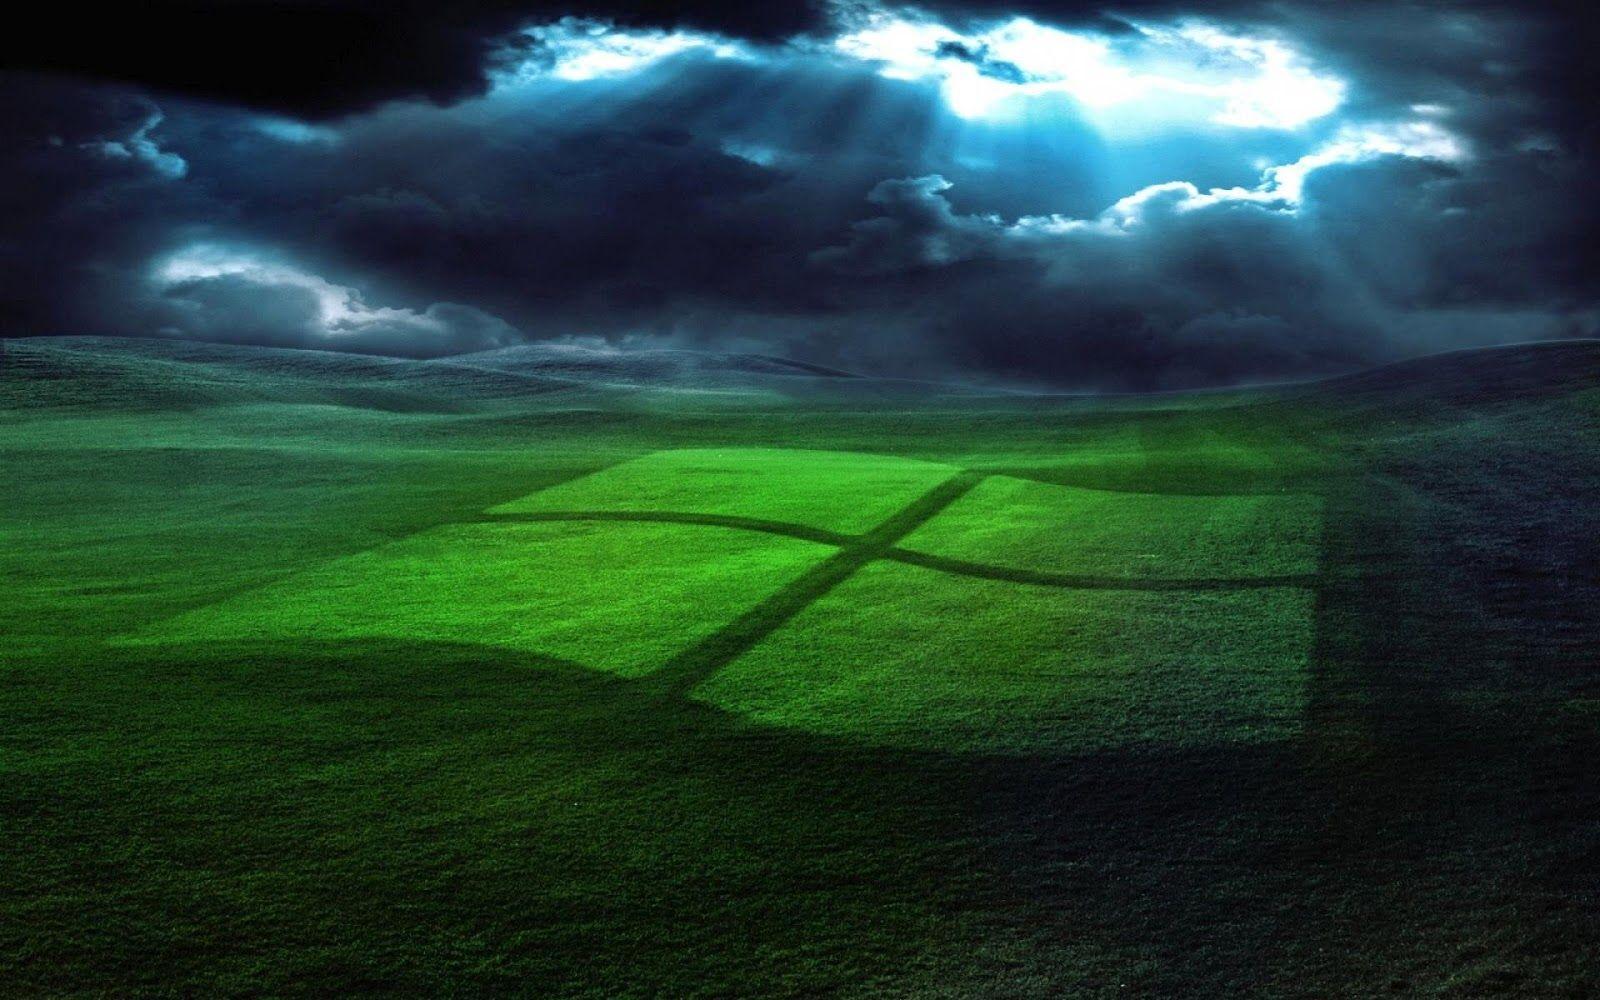 Mix Windows XP, 8 HD Wallpaper. HD Wallpaper Zon